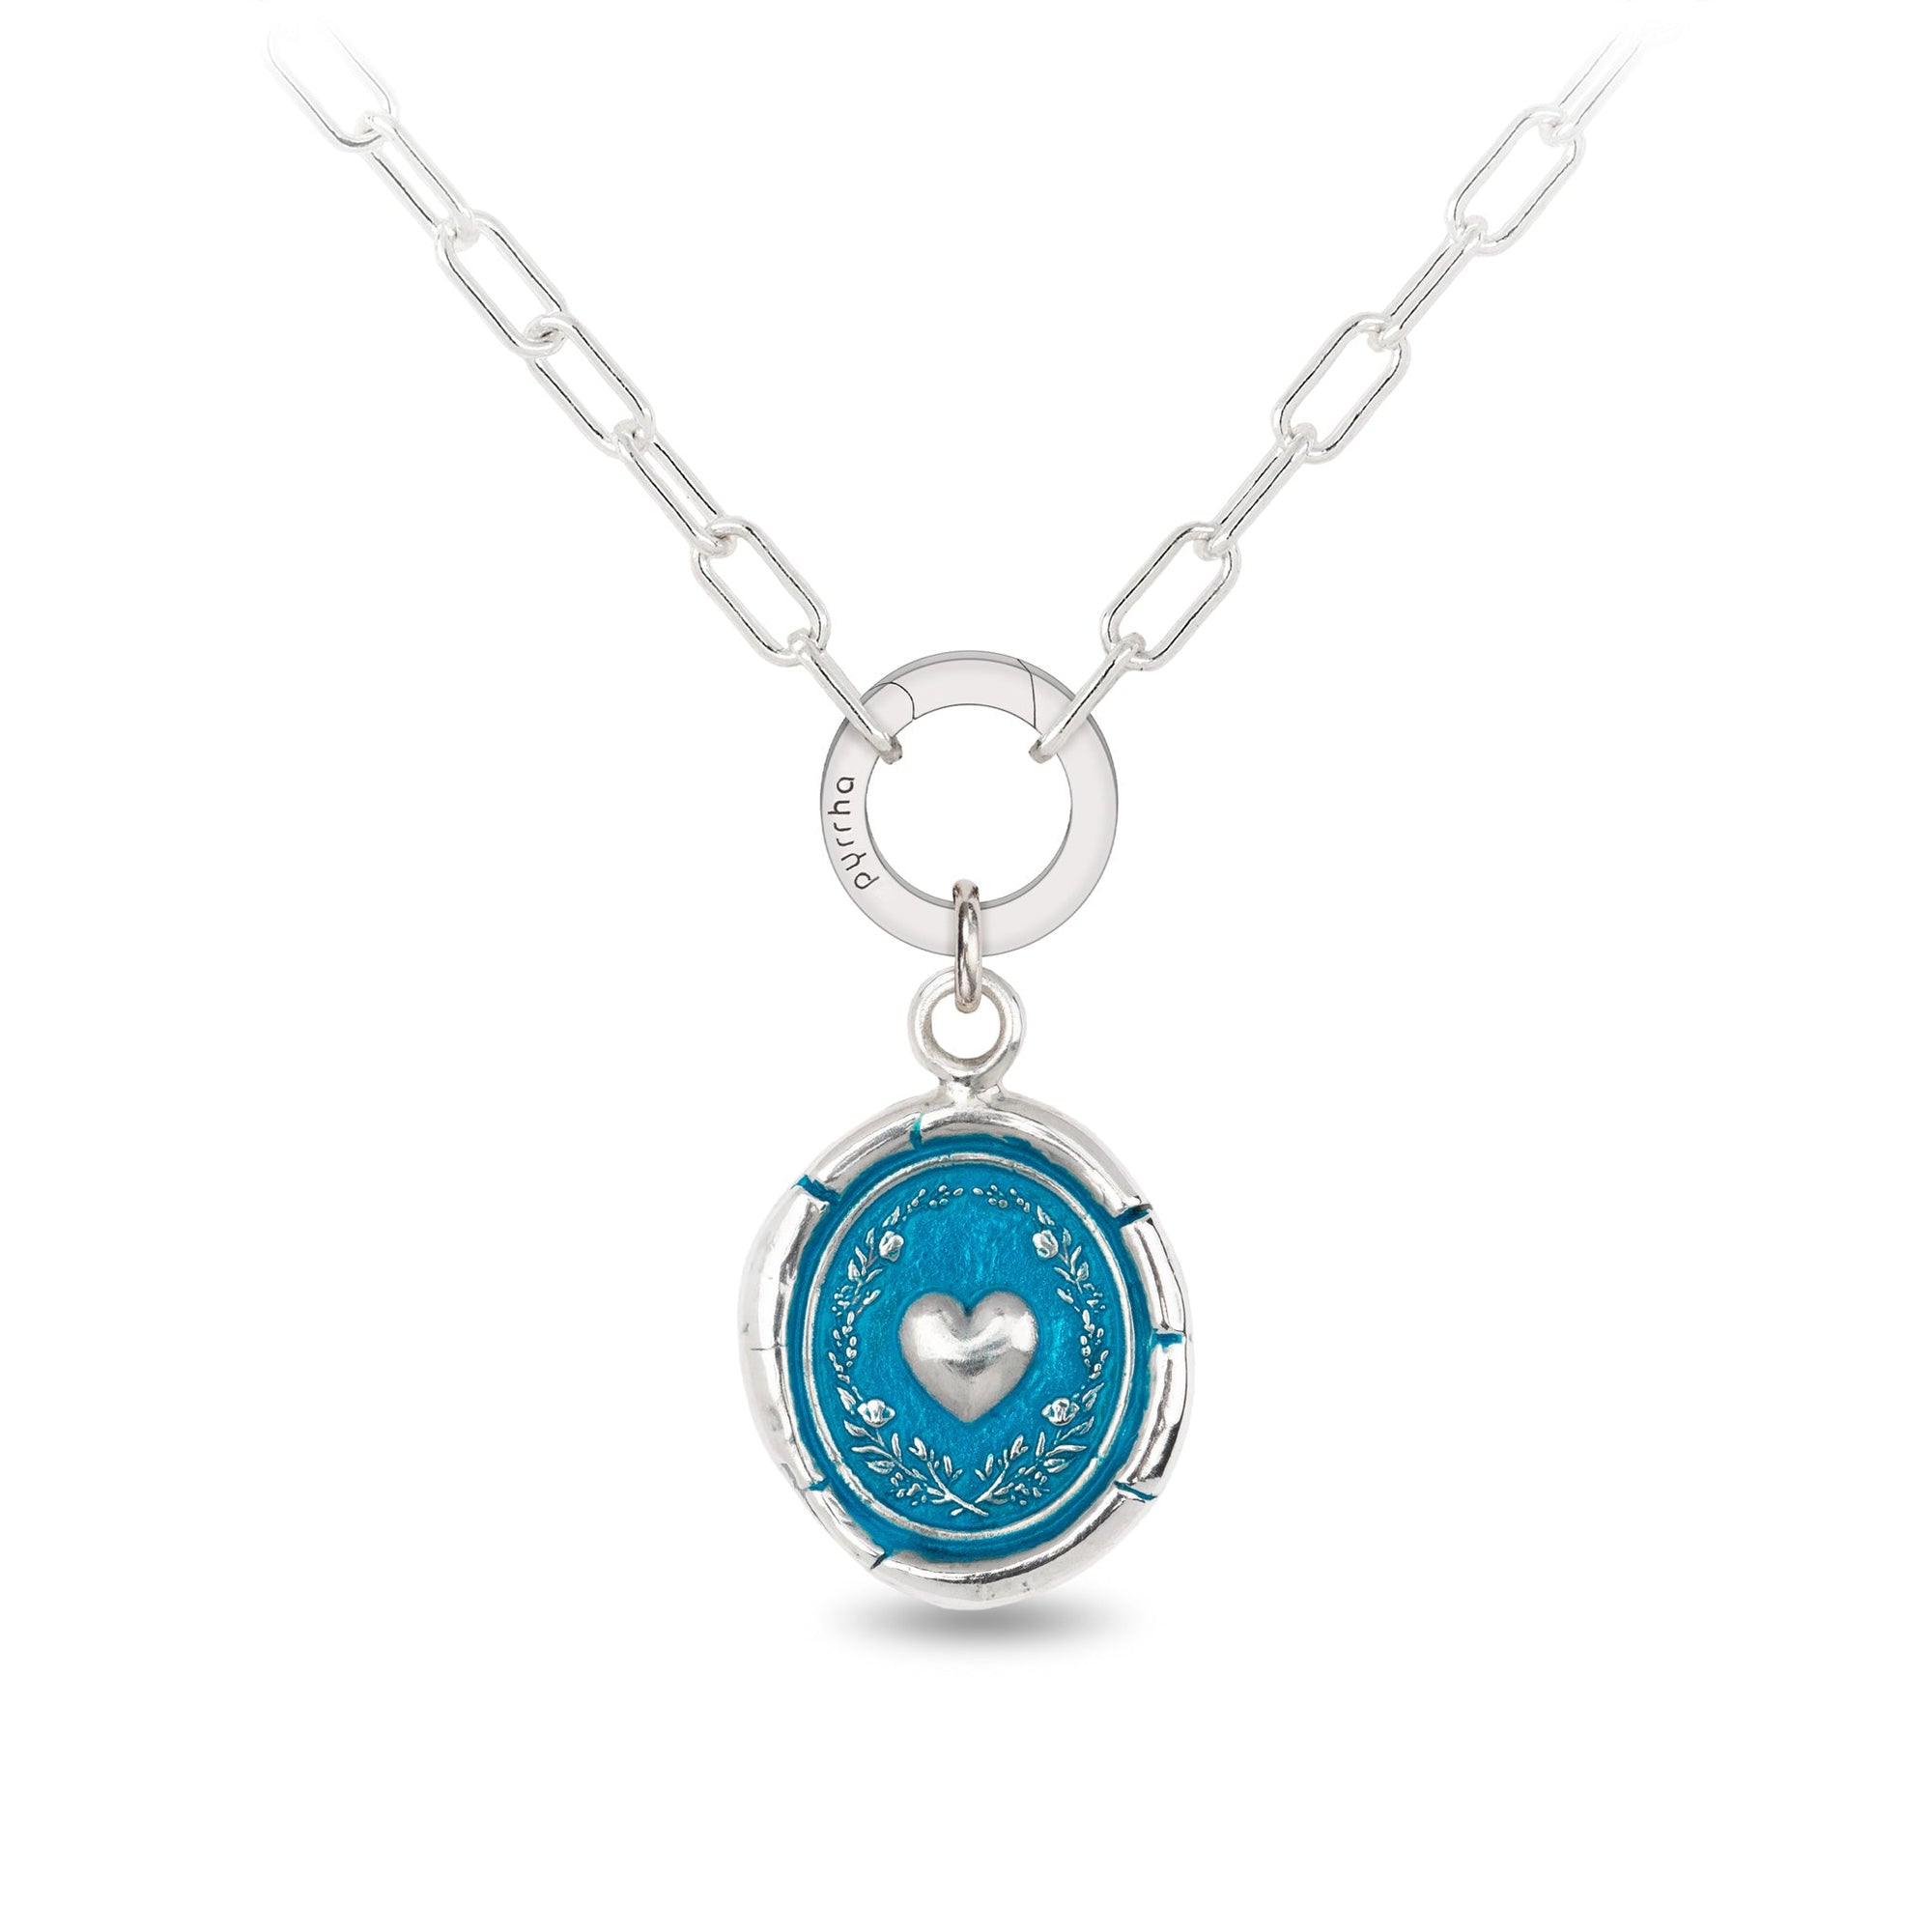 Self-Love Small Paperclip Chain Necklace - Capri Blue